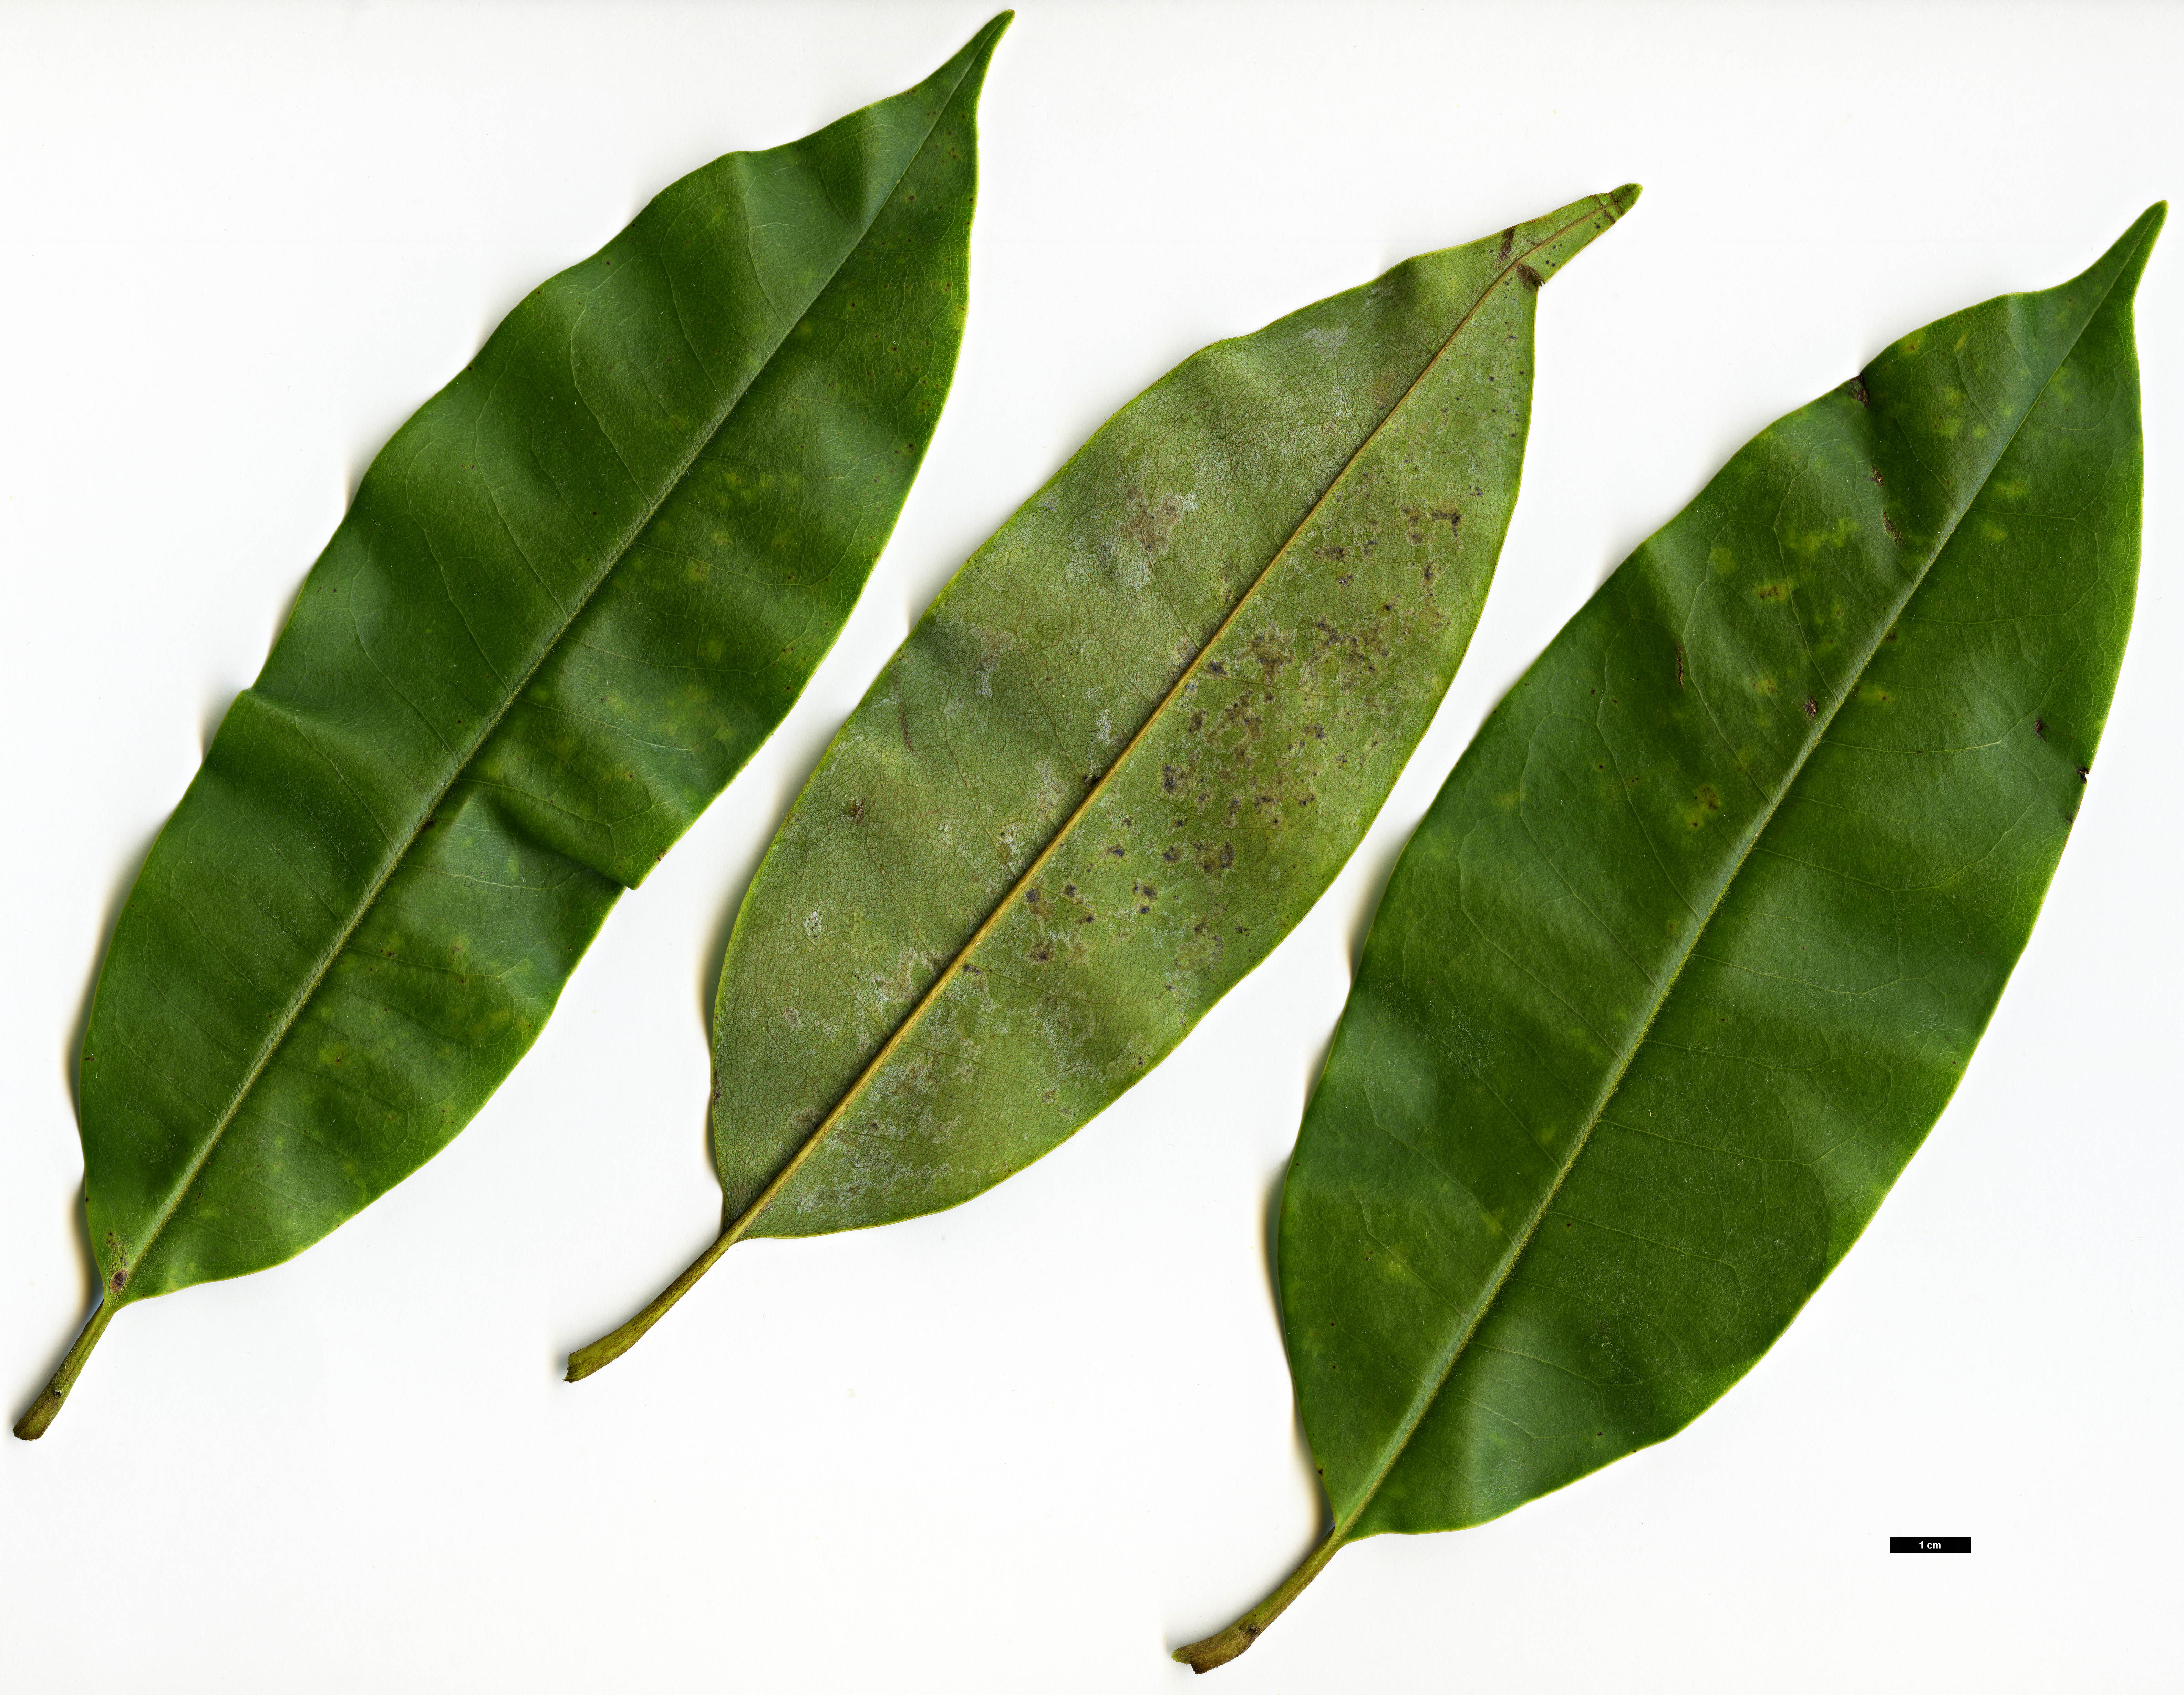 High resolution image: Family: Magnoliaceae - Genus: Magnolia - Taxon: floribunda